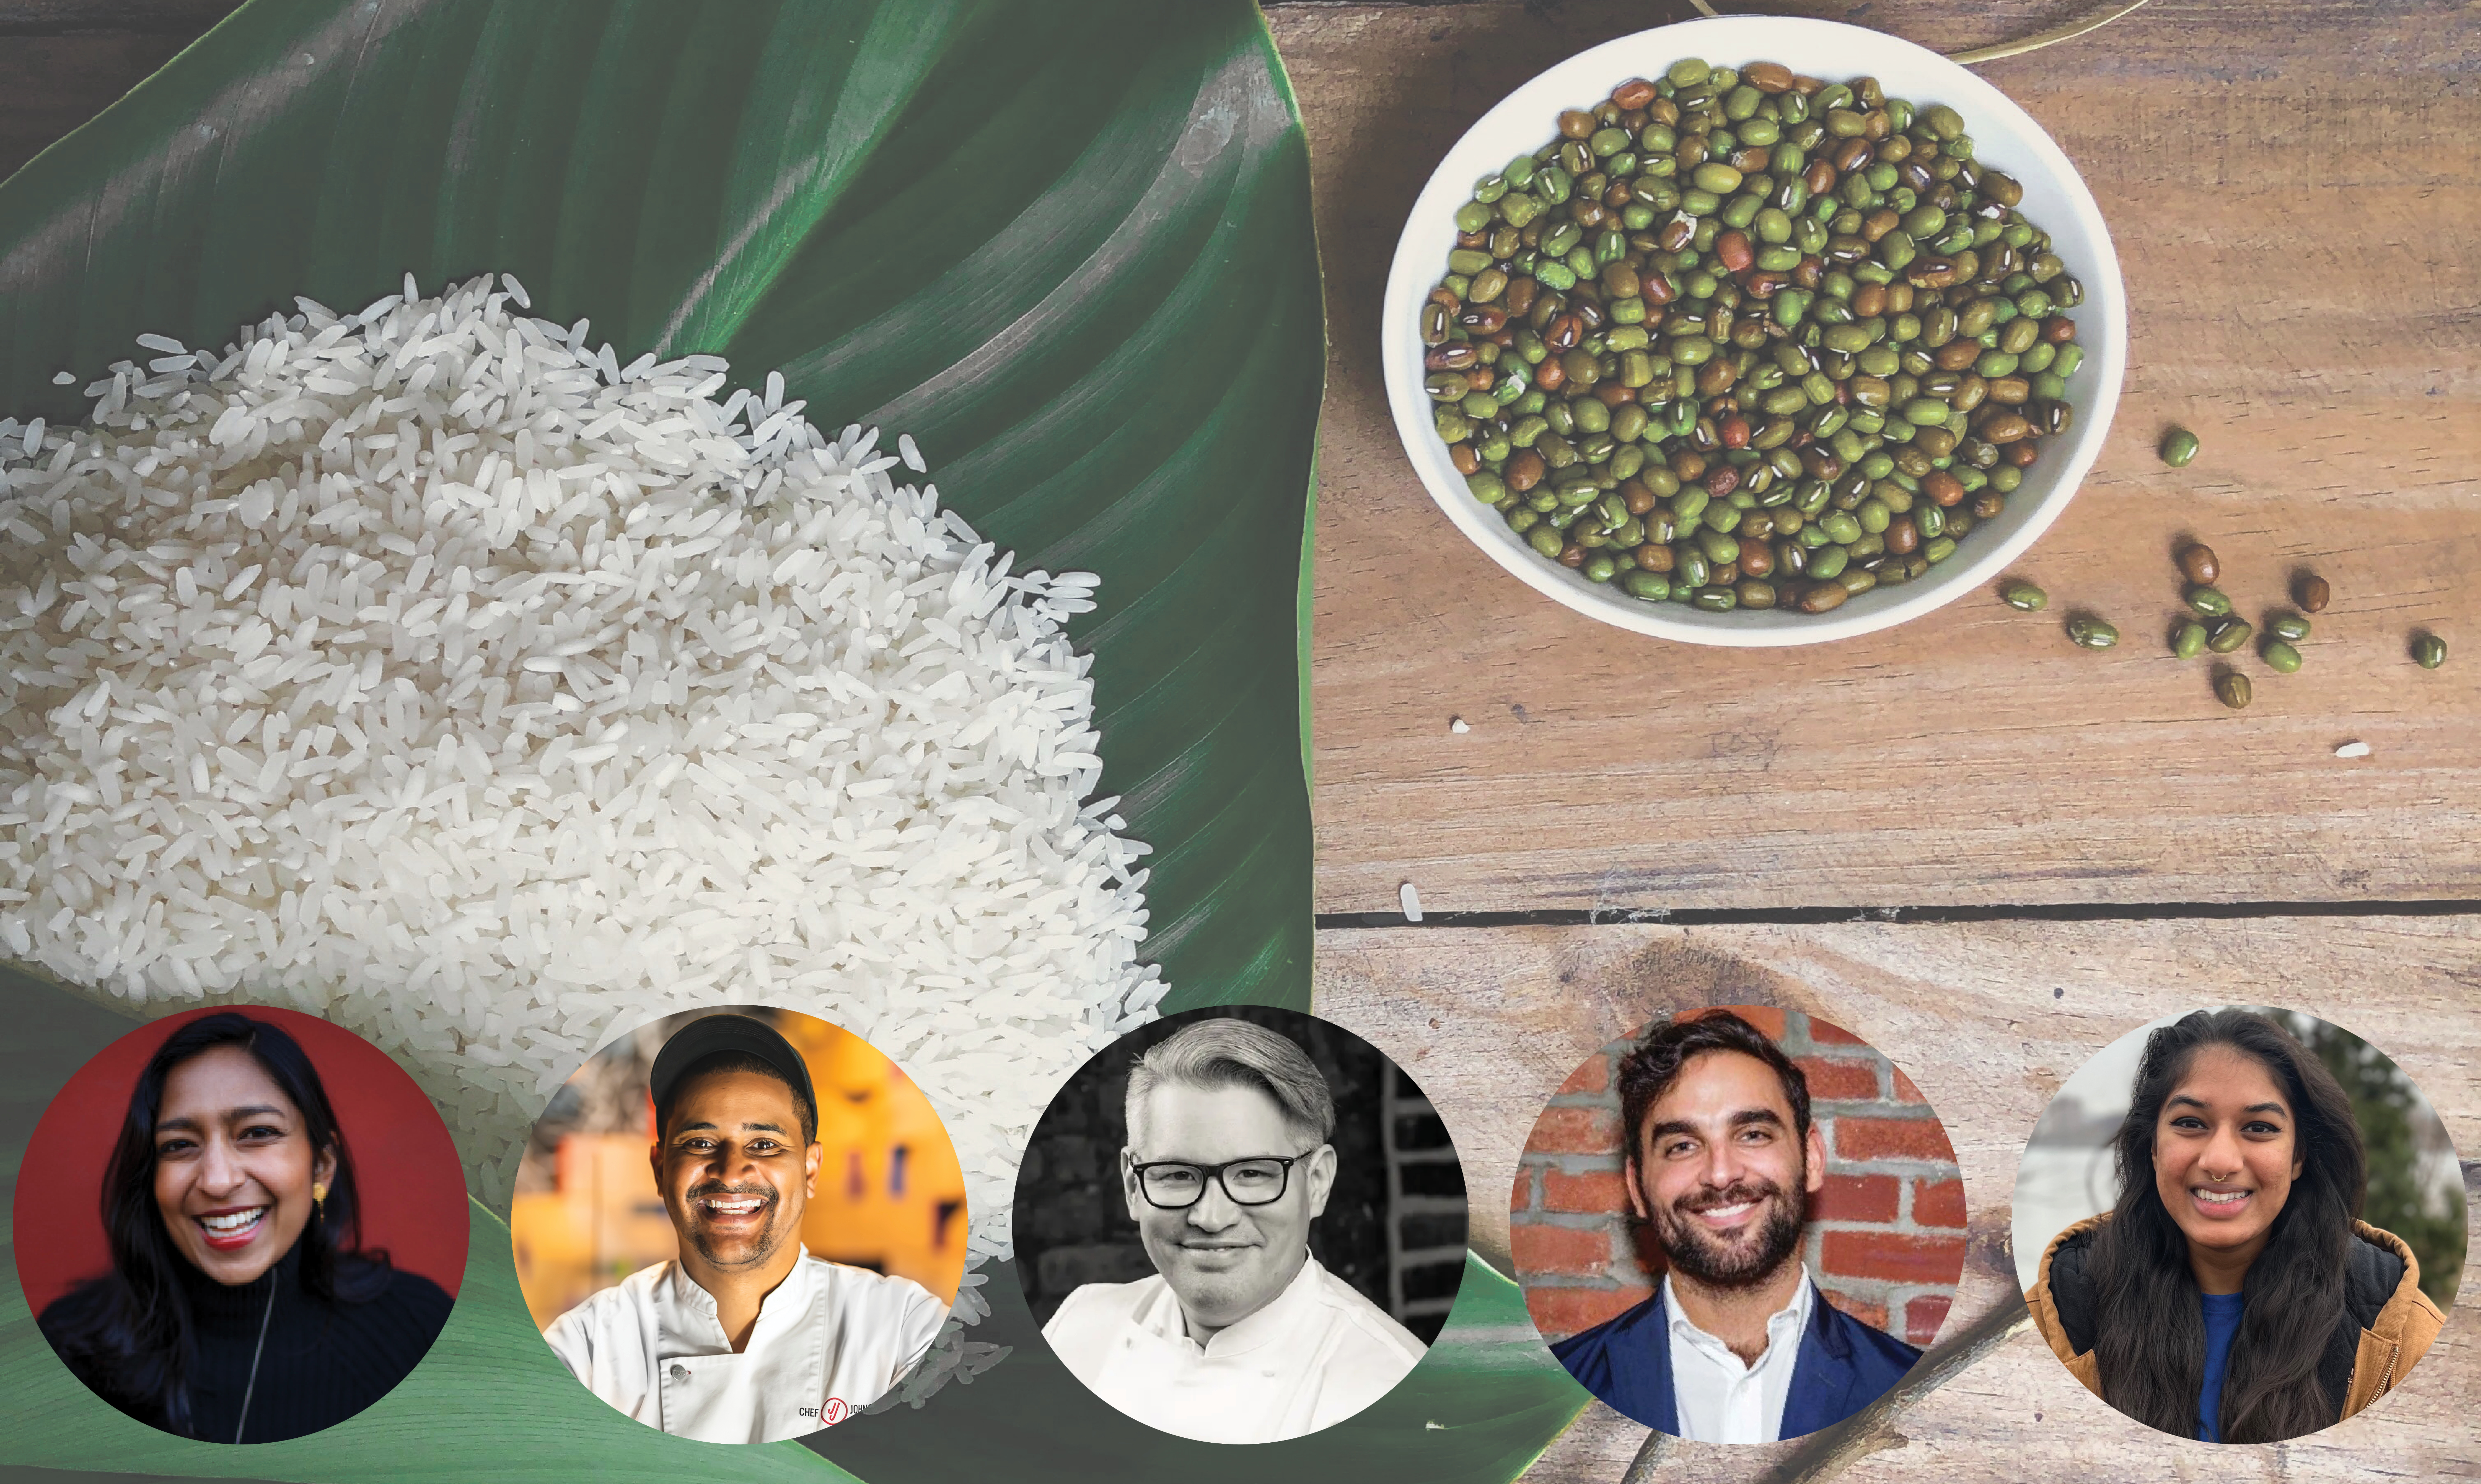 Un montón de arroz blanco crudo encima de una hoja verde. A la derecha hay un tazón de frijoles crudos. En la esquina inferior derecha hay un retrato de Priya Krishna, el chef JJ Johnson, Oscar Lorenzzi y James Gonzalez Anisha Rathod.